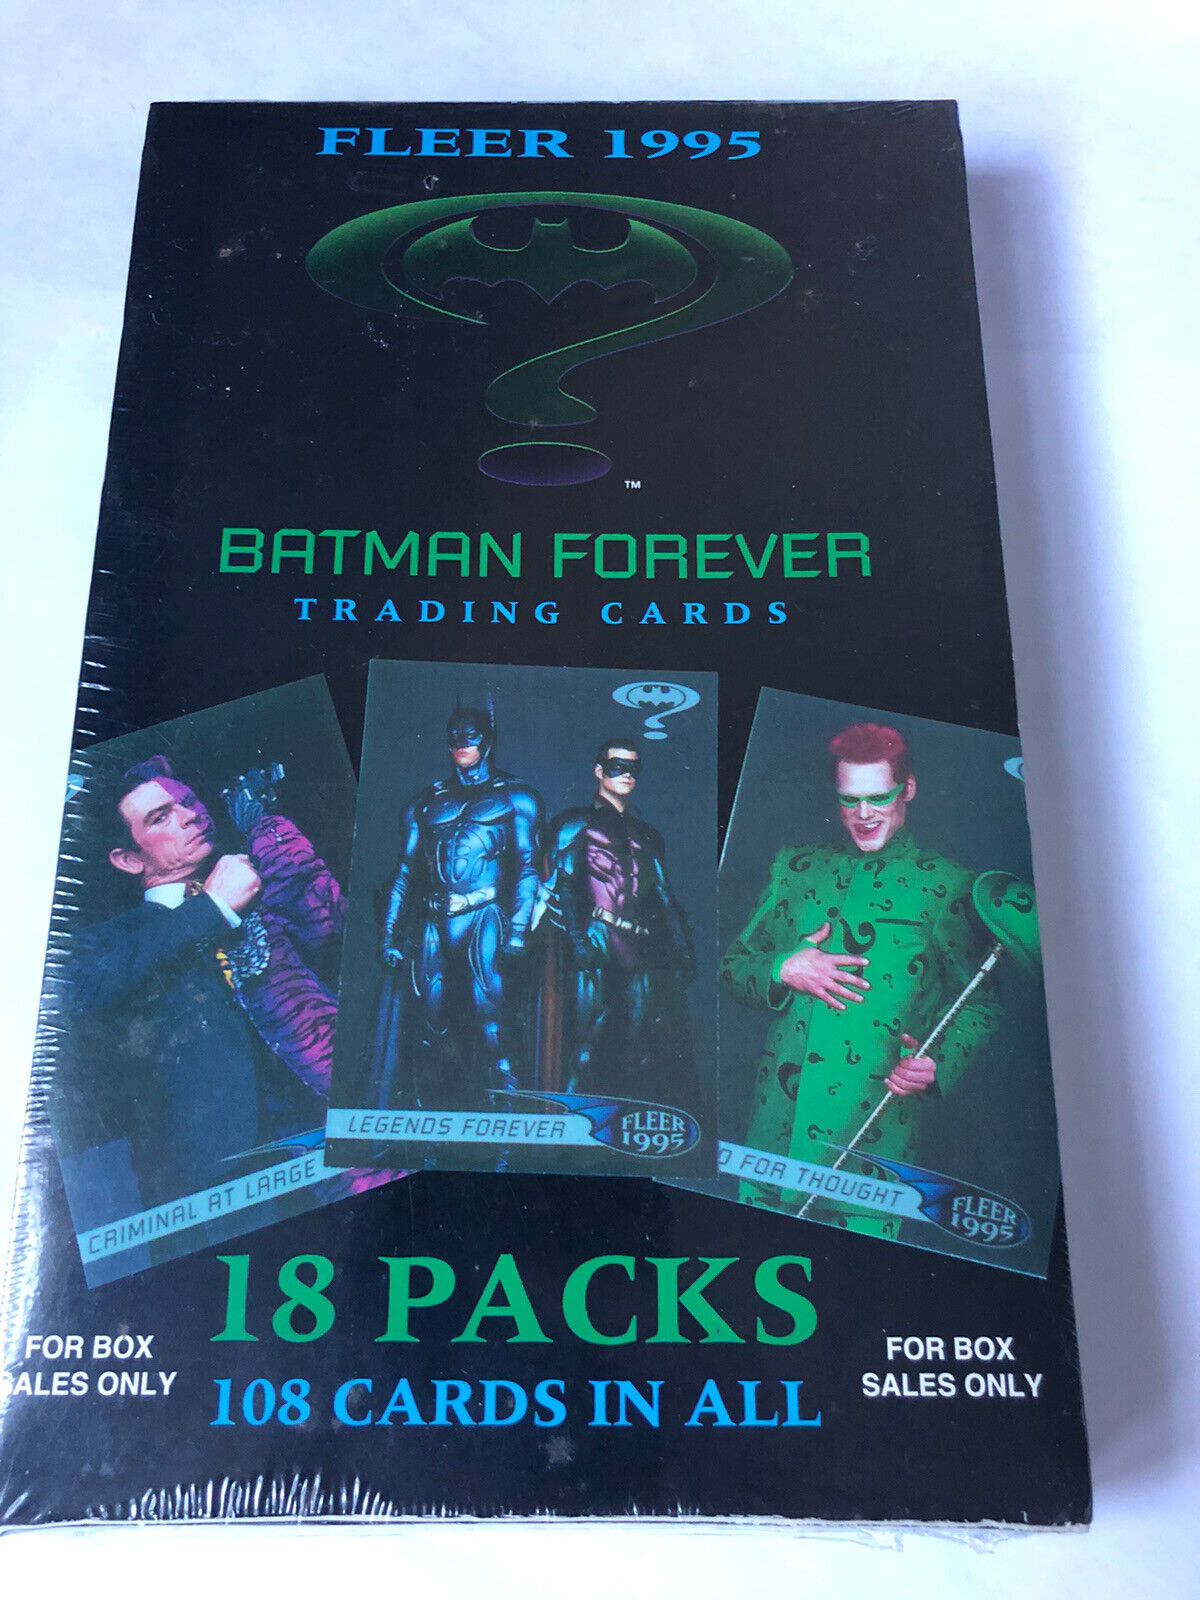 FLEER 1995 BATMAN FOREVER TRADING CARDS FACTORY SEALED BOX OF 18 PACKS RARE